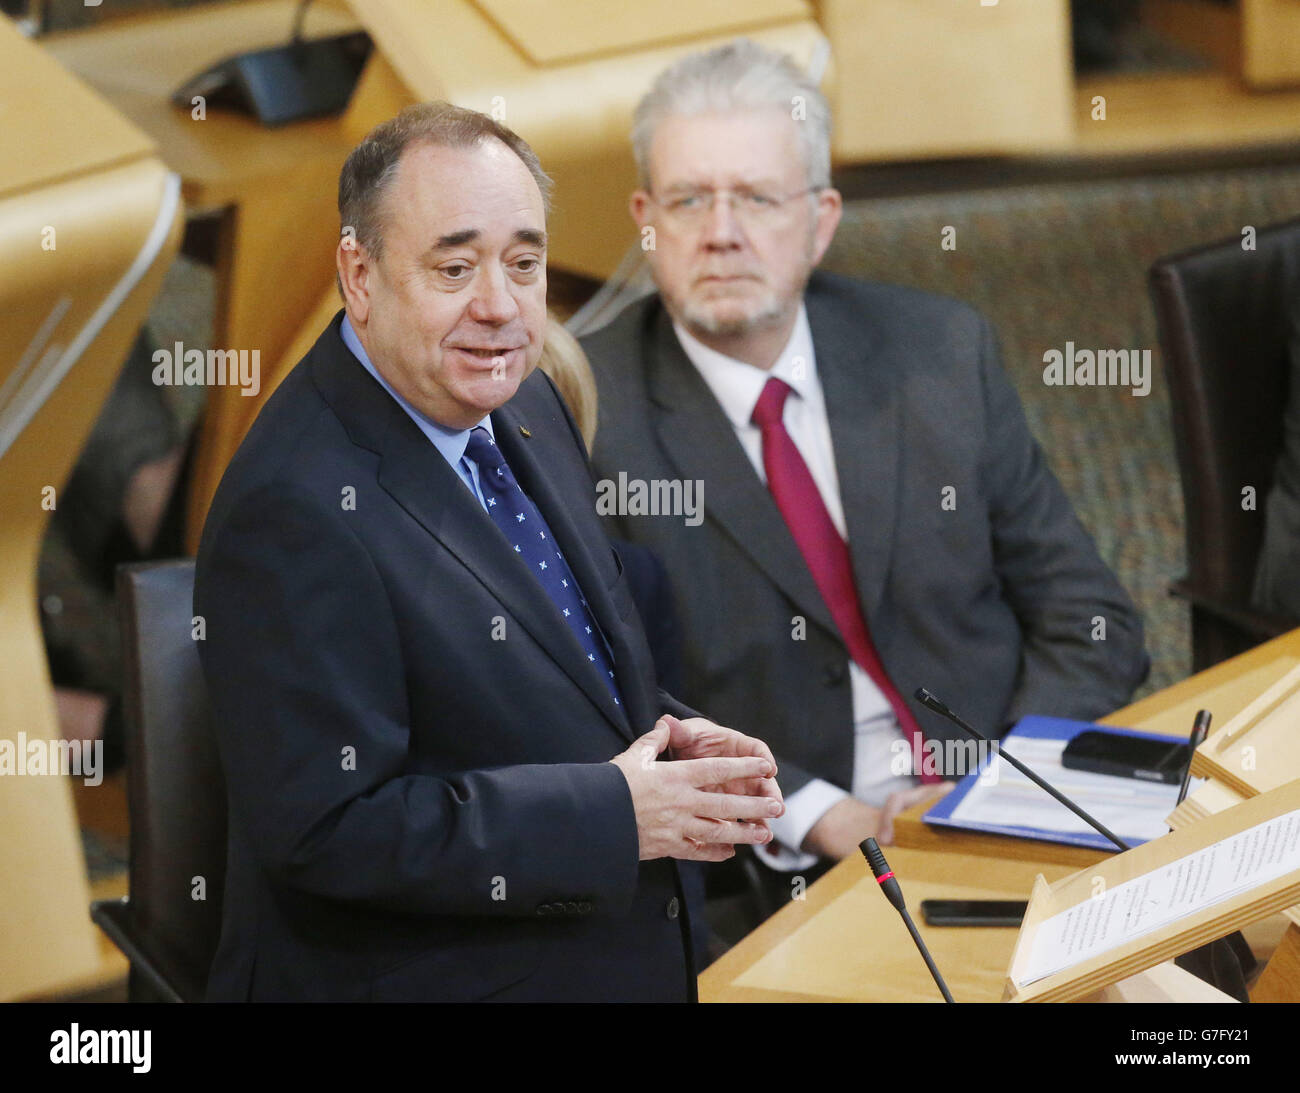 Alex Salmond tritt während einer Erklärung vor dem schottischen Parlament in Edinburgh als erster Minister von Schottland zurück, die den Weg für die Übernahme der neuen SNP-Chefin Nicola Sturgeon ebnet. Stockfoto